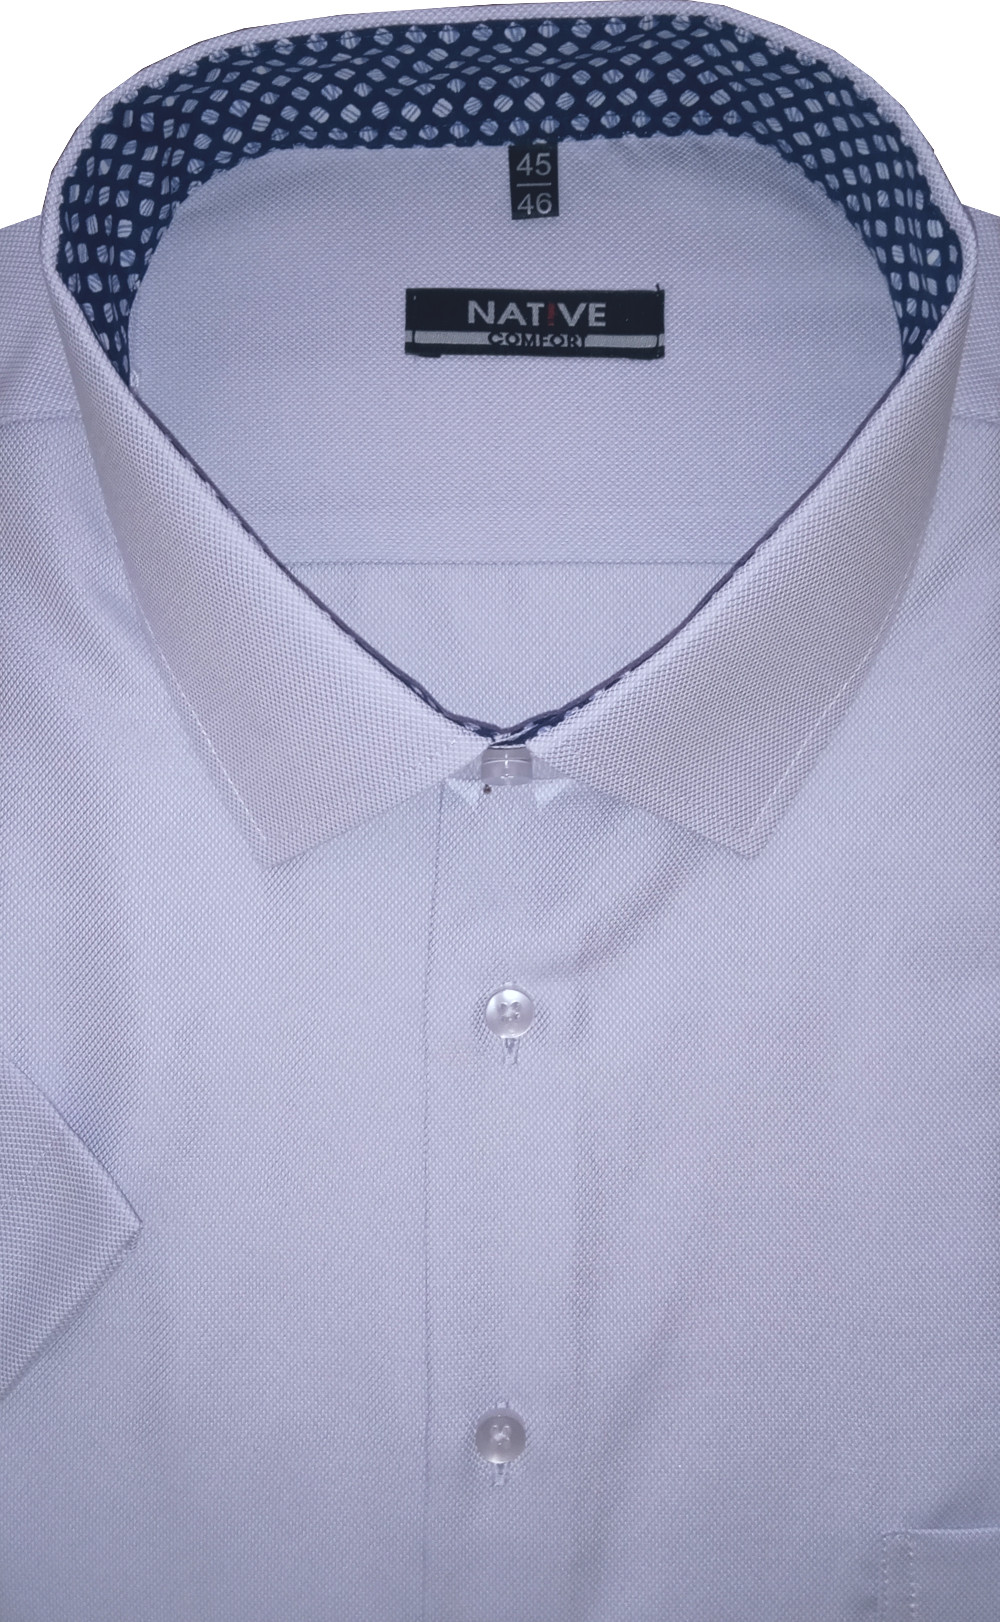 Pánská košile (lila) s krátkým rukávem, vel. 45/46 - N220/319